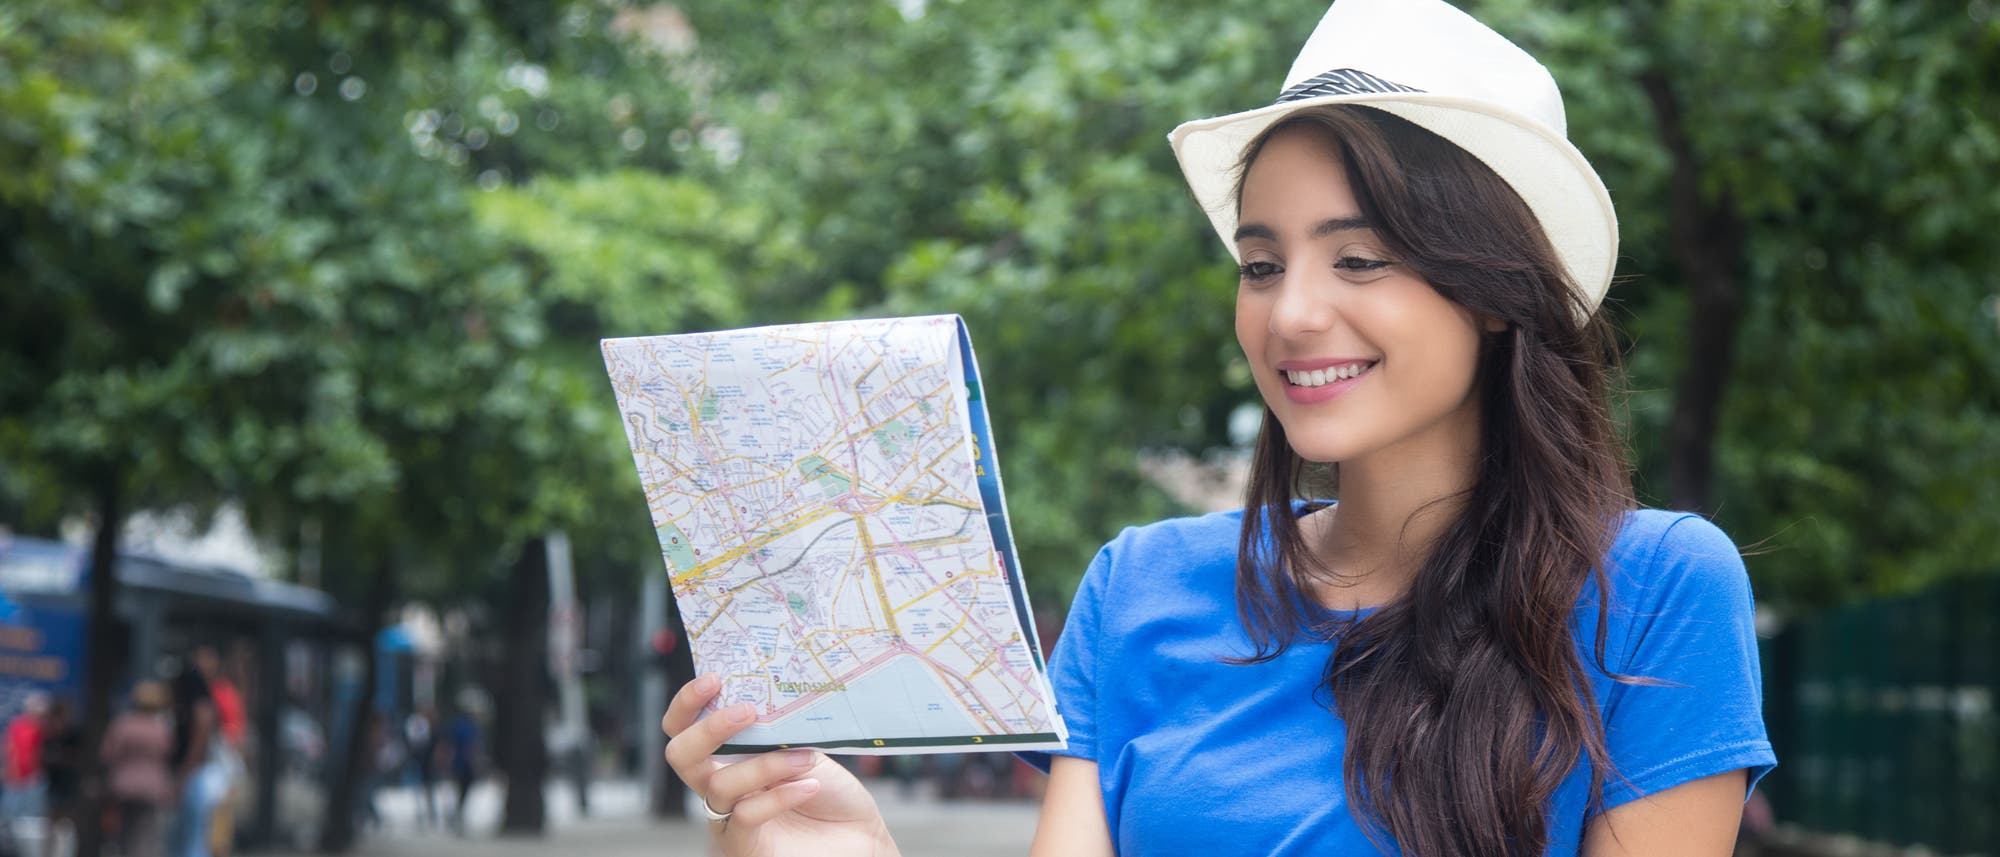 Eine junge Frau in blauem Top betrachtet einen traditionellen Stadtplan auf Papier, möglicherweise aus historischem Interesse.